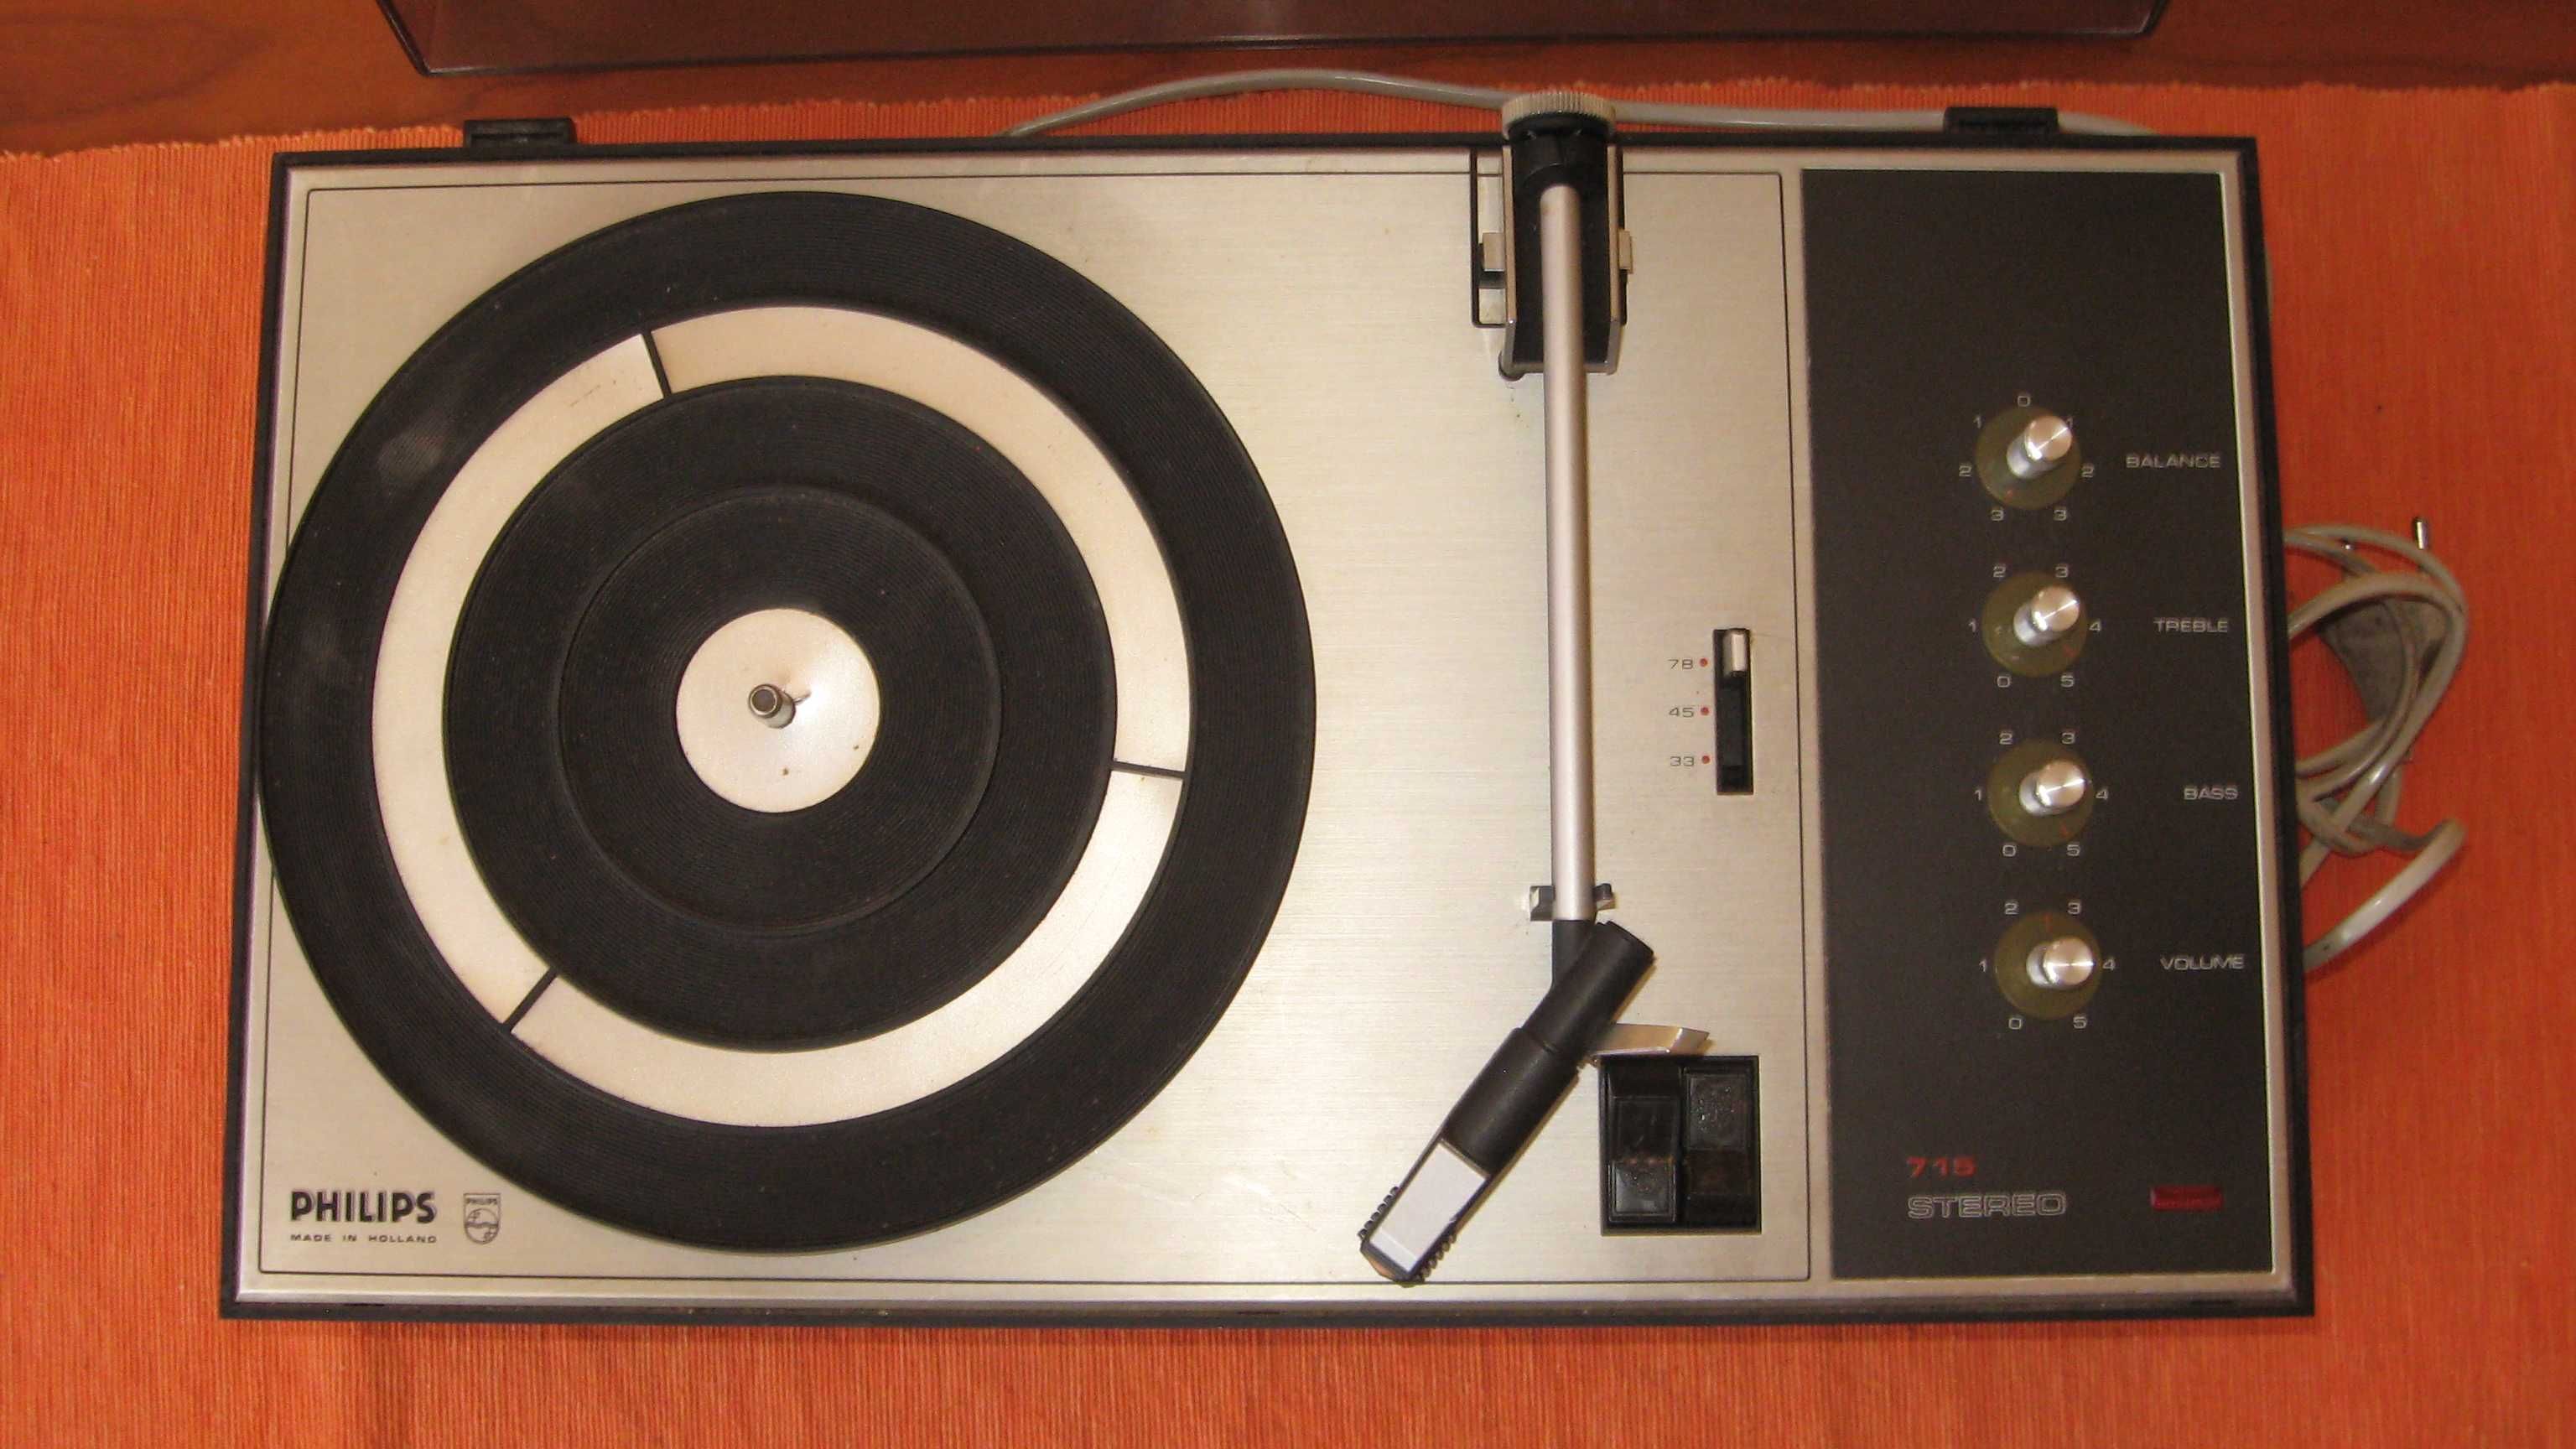 Gira Discos Amplificado Vintage Philips 715